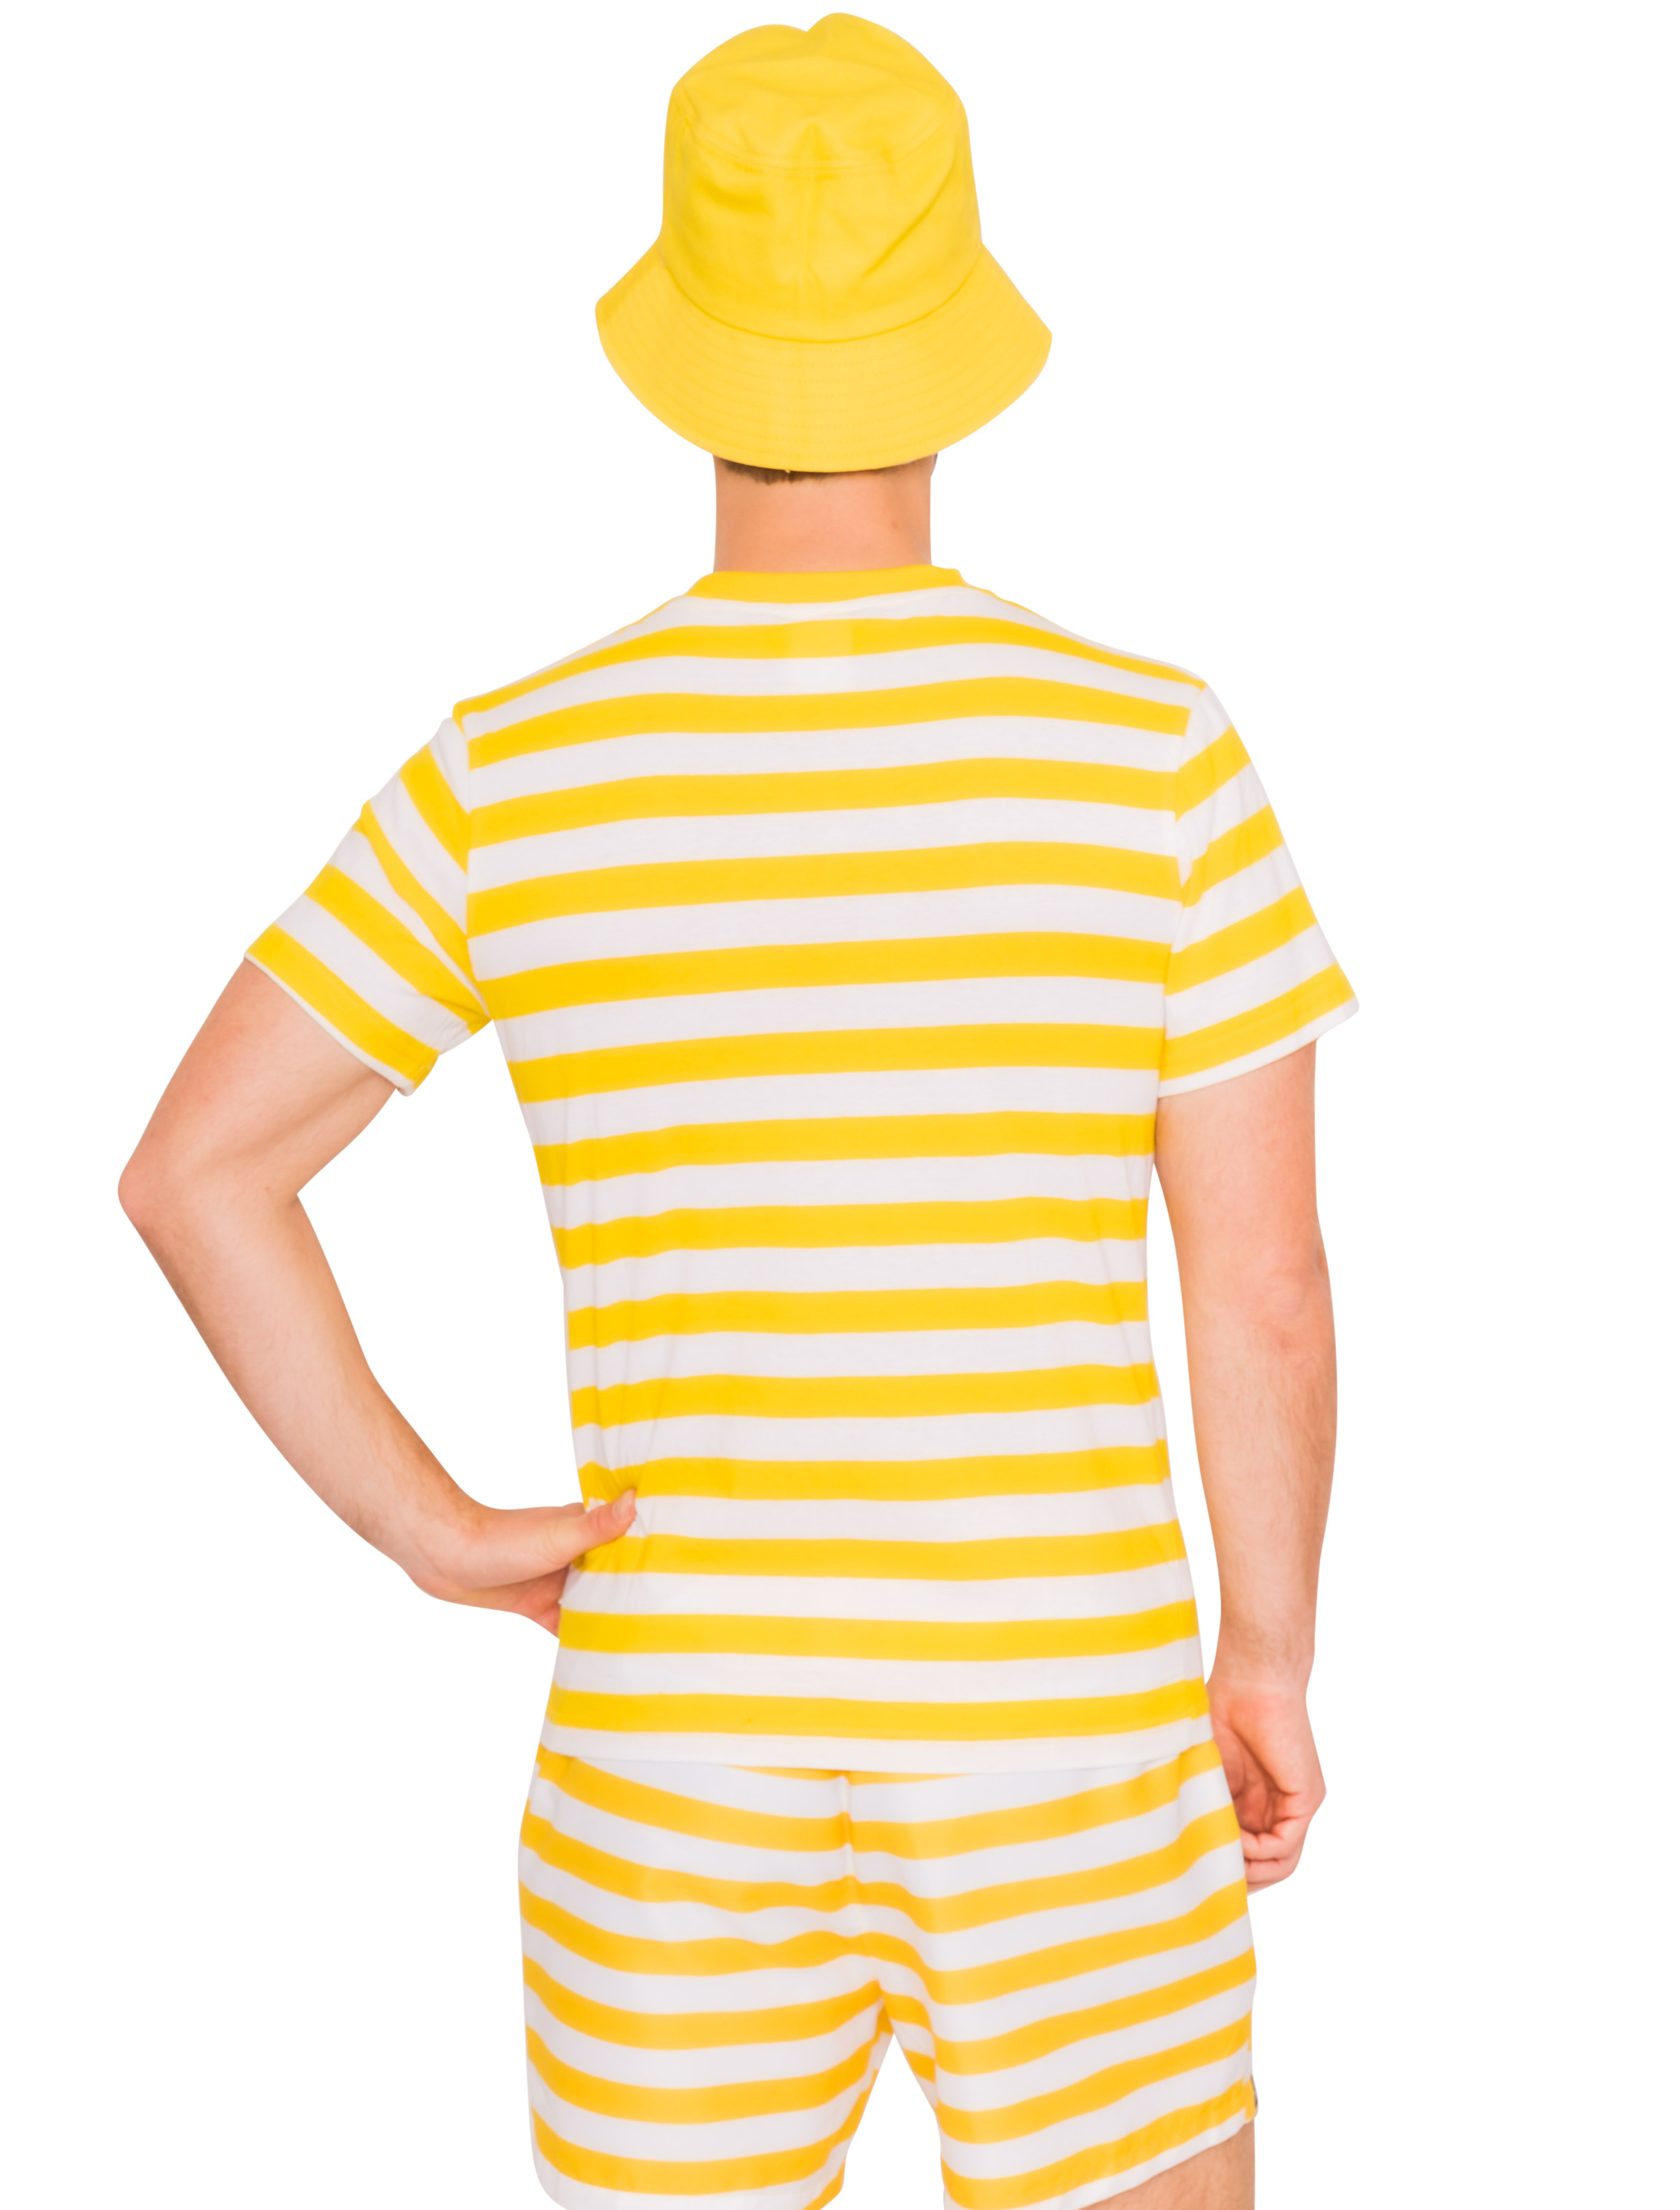 JIS T-Shirt Jeck im Sunnesching Herren gelb S